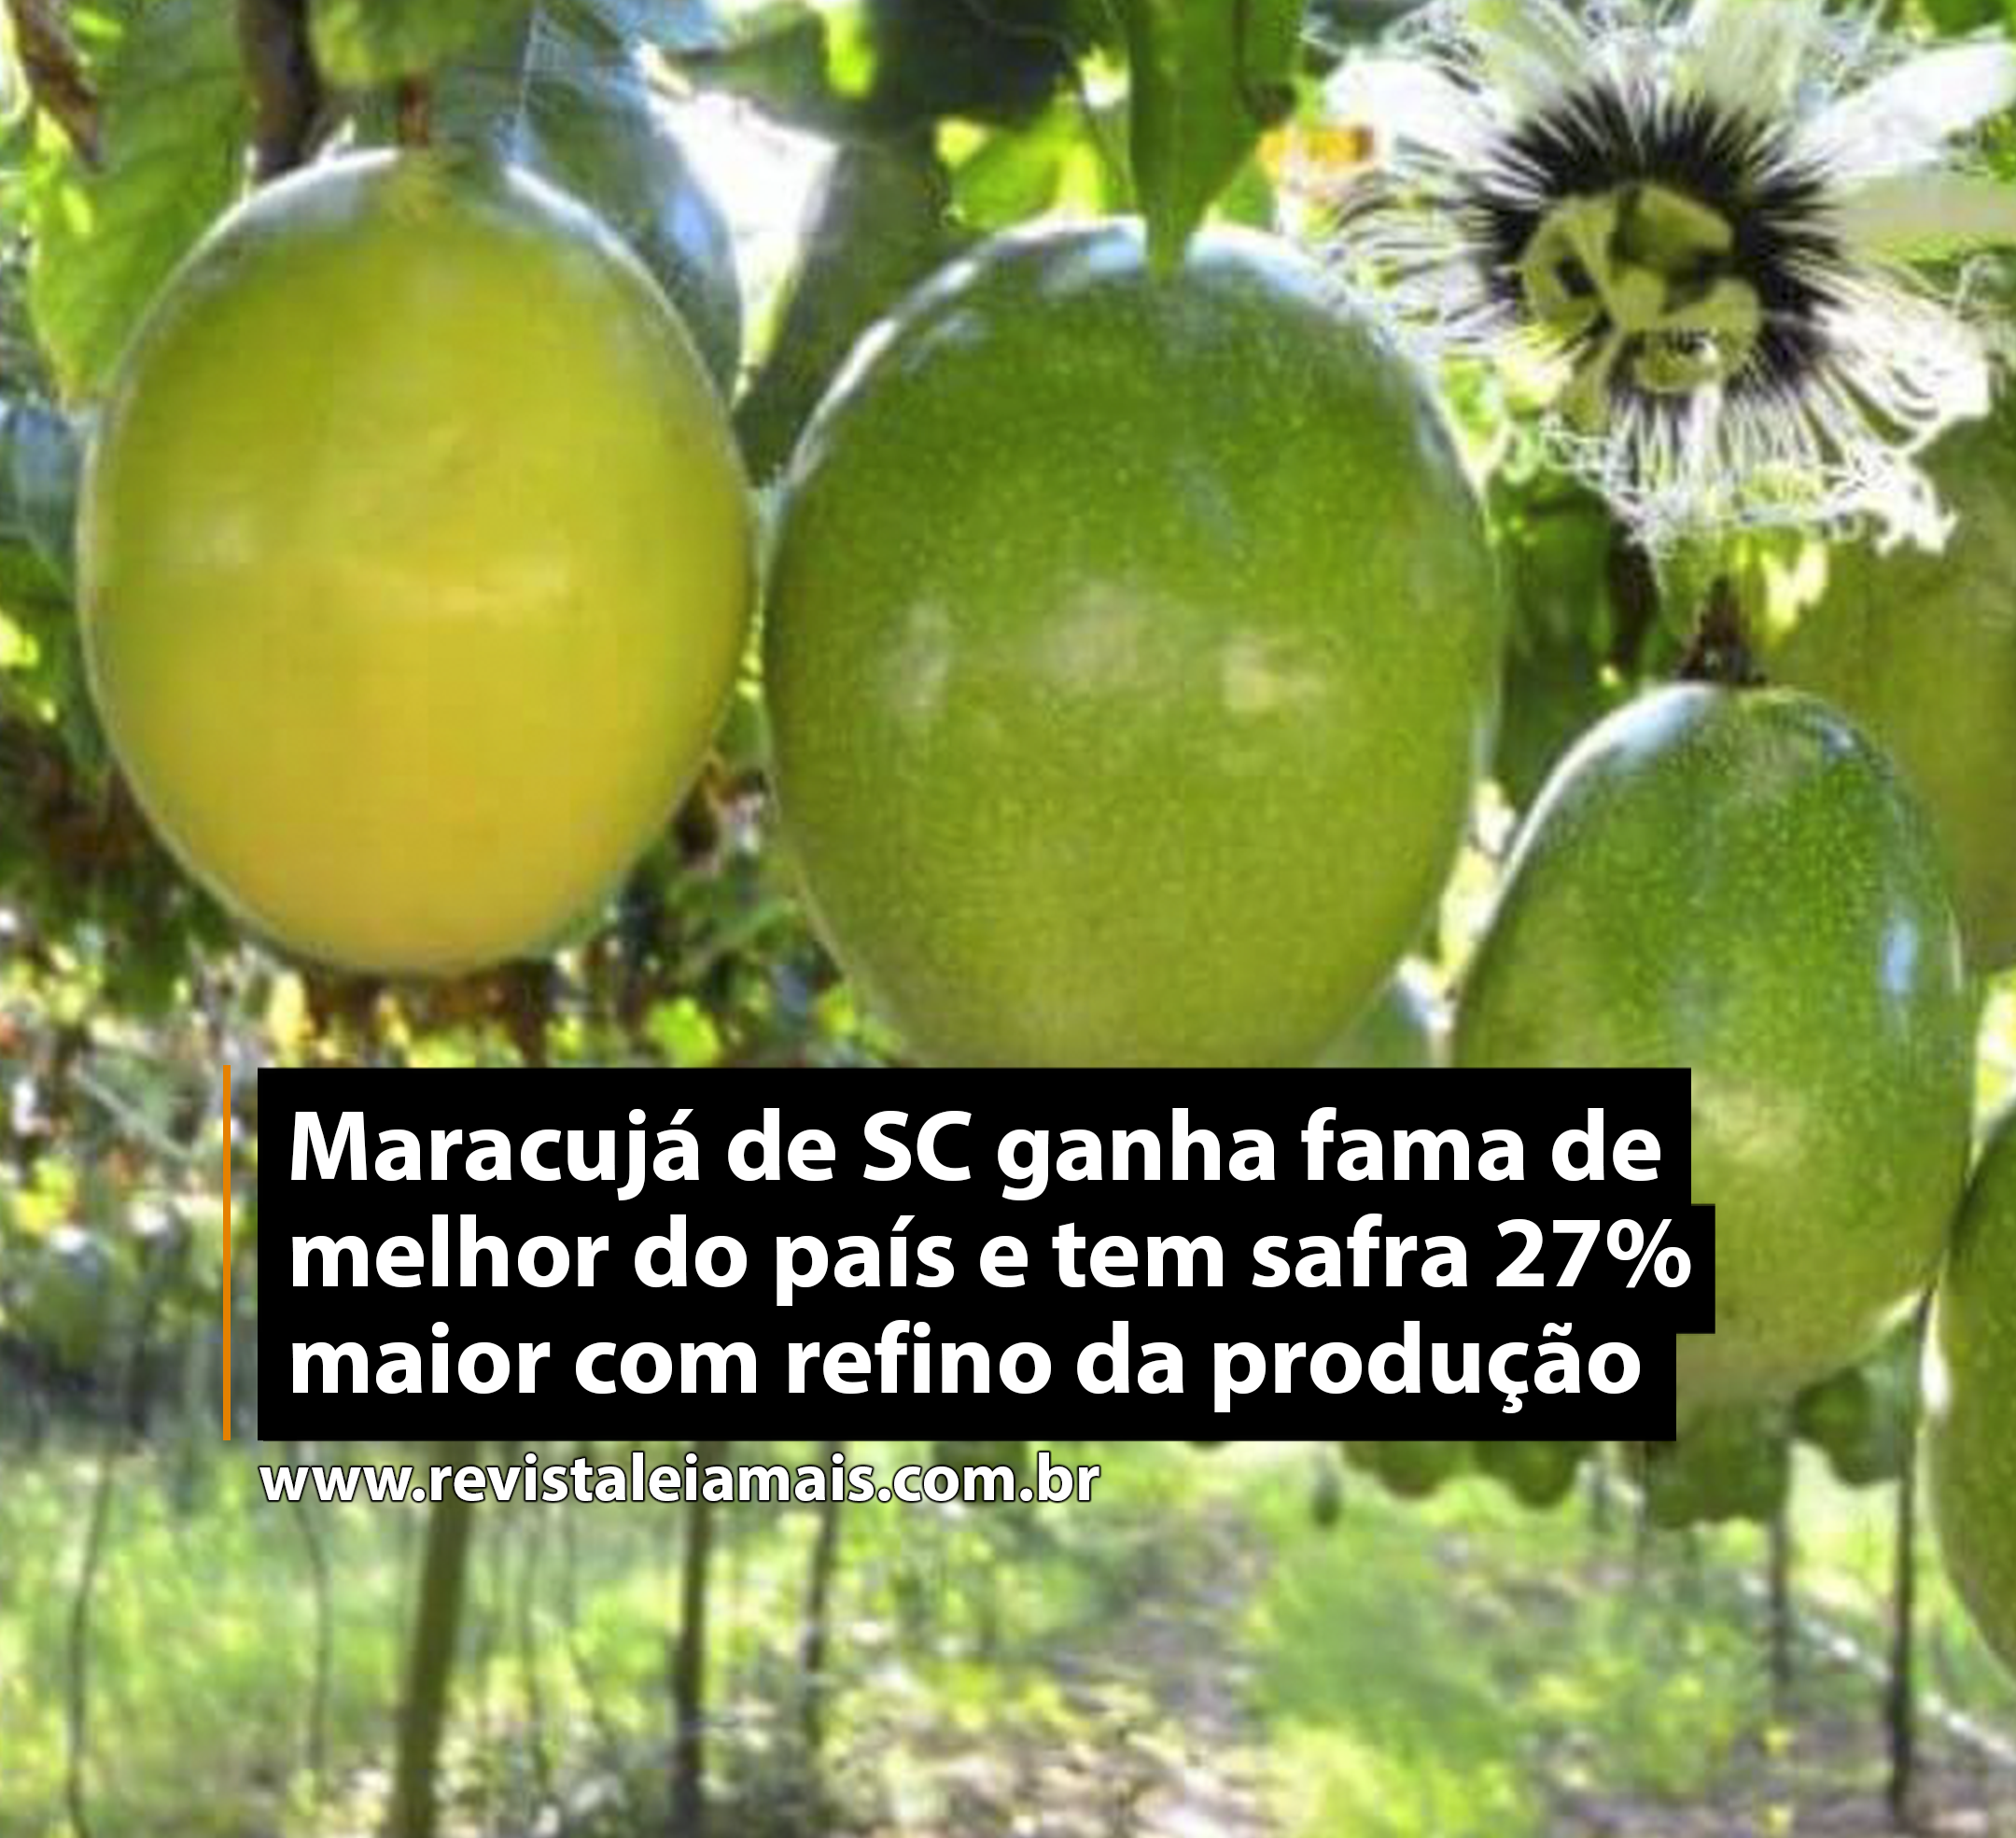 Maracujá de SC ganha fama de melhor do país e tem safra 27% maior com refino da produção